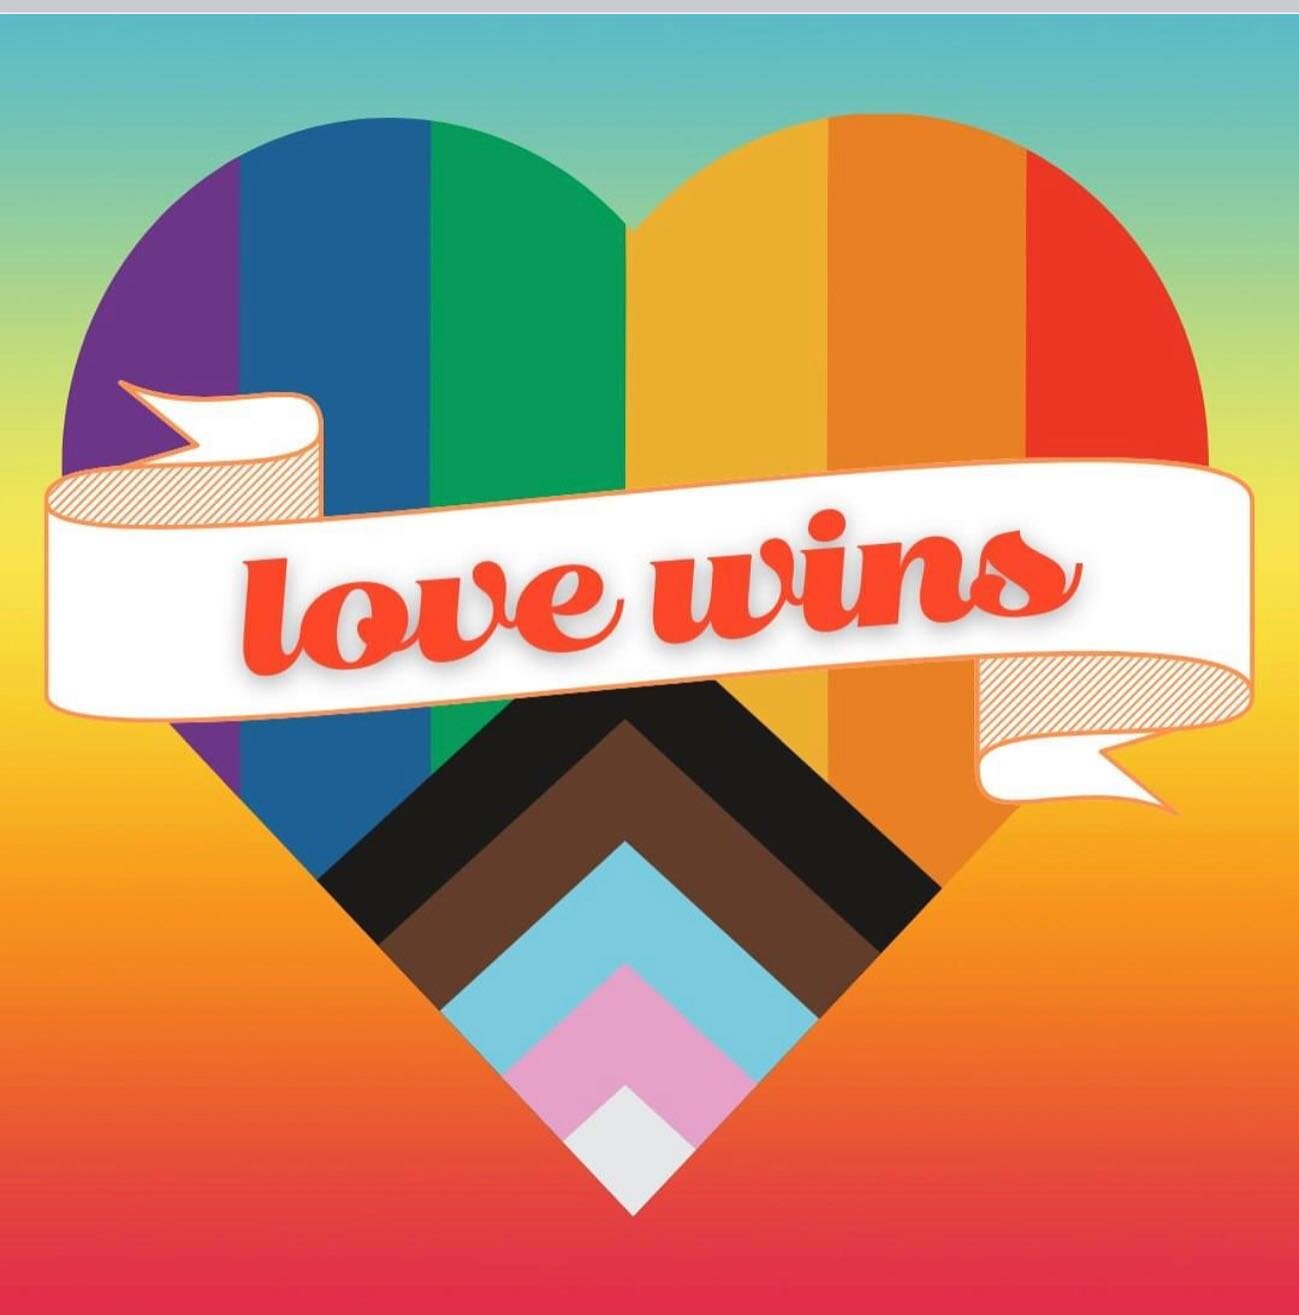 LOVE always wins! ❤️🧡💛💚💜 #pridemonth #pride2022 #ally #pride🌈